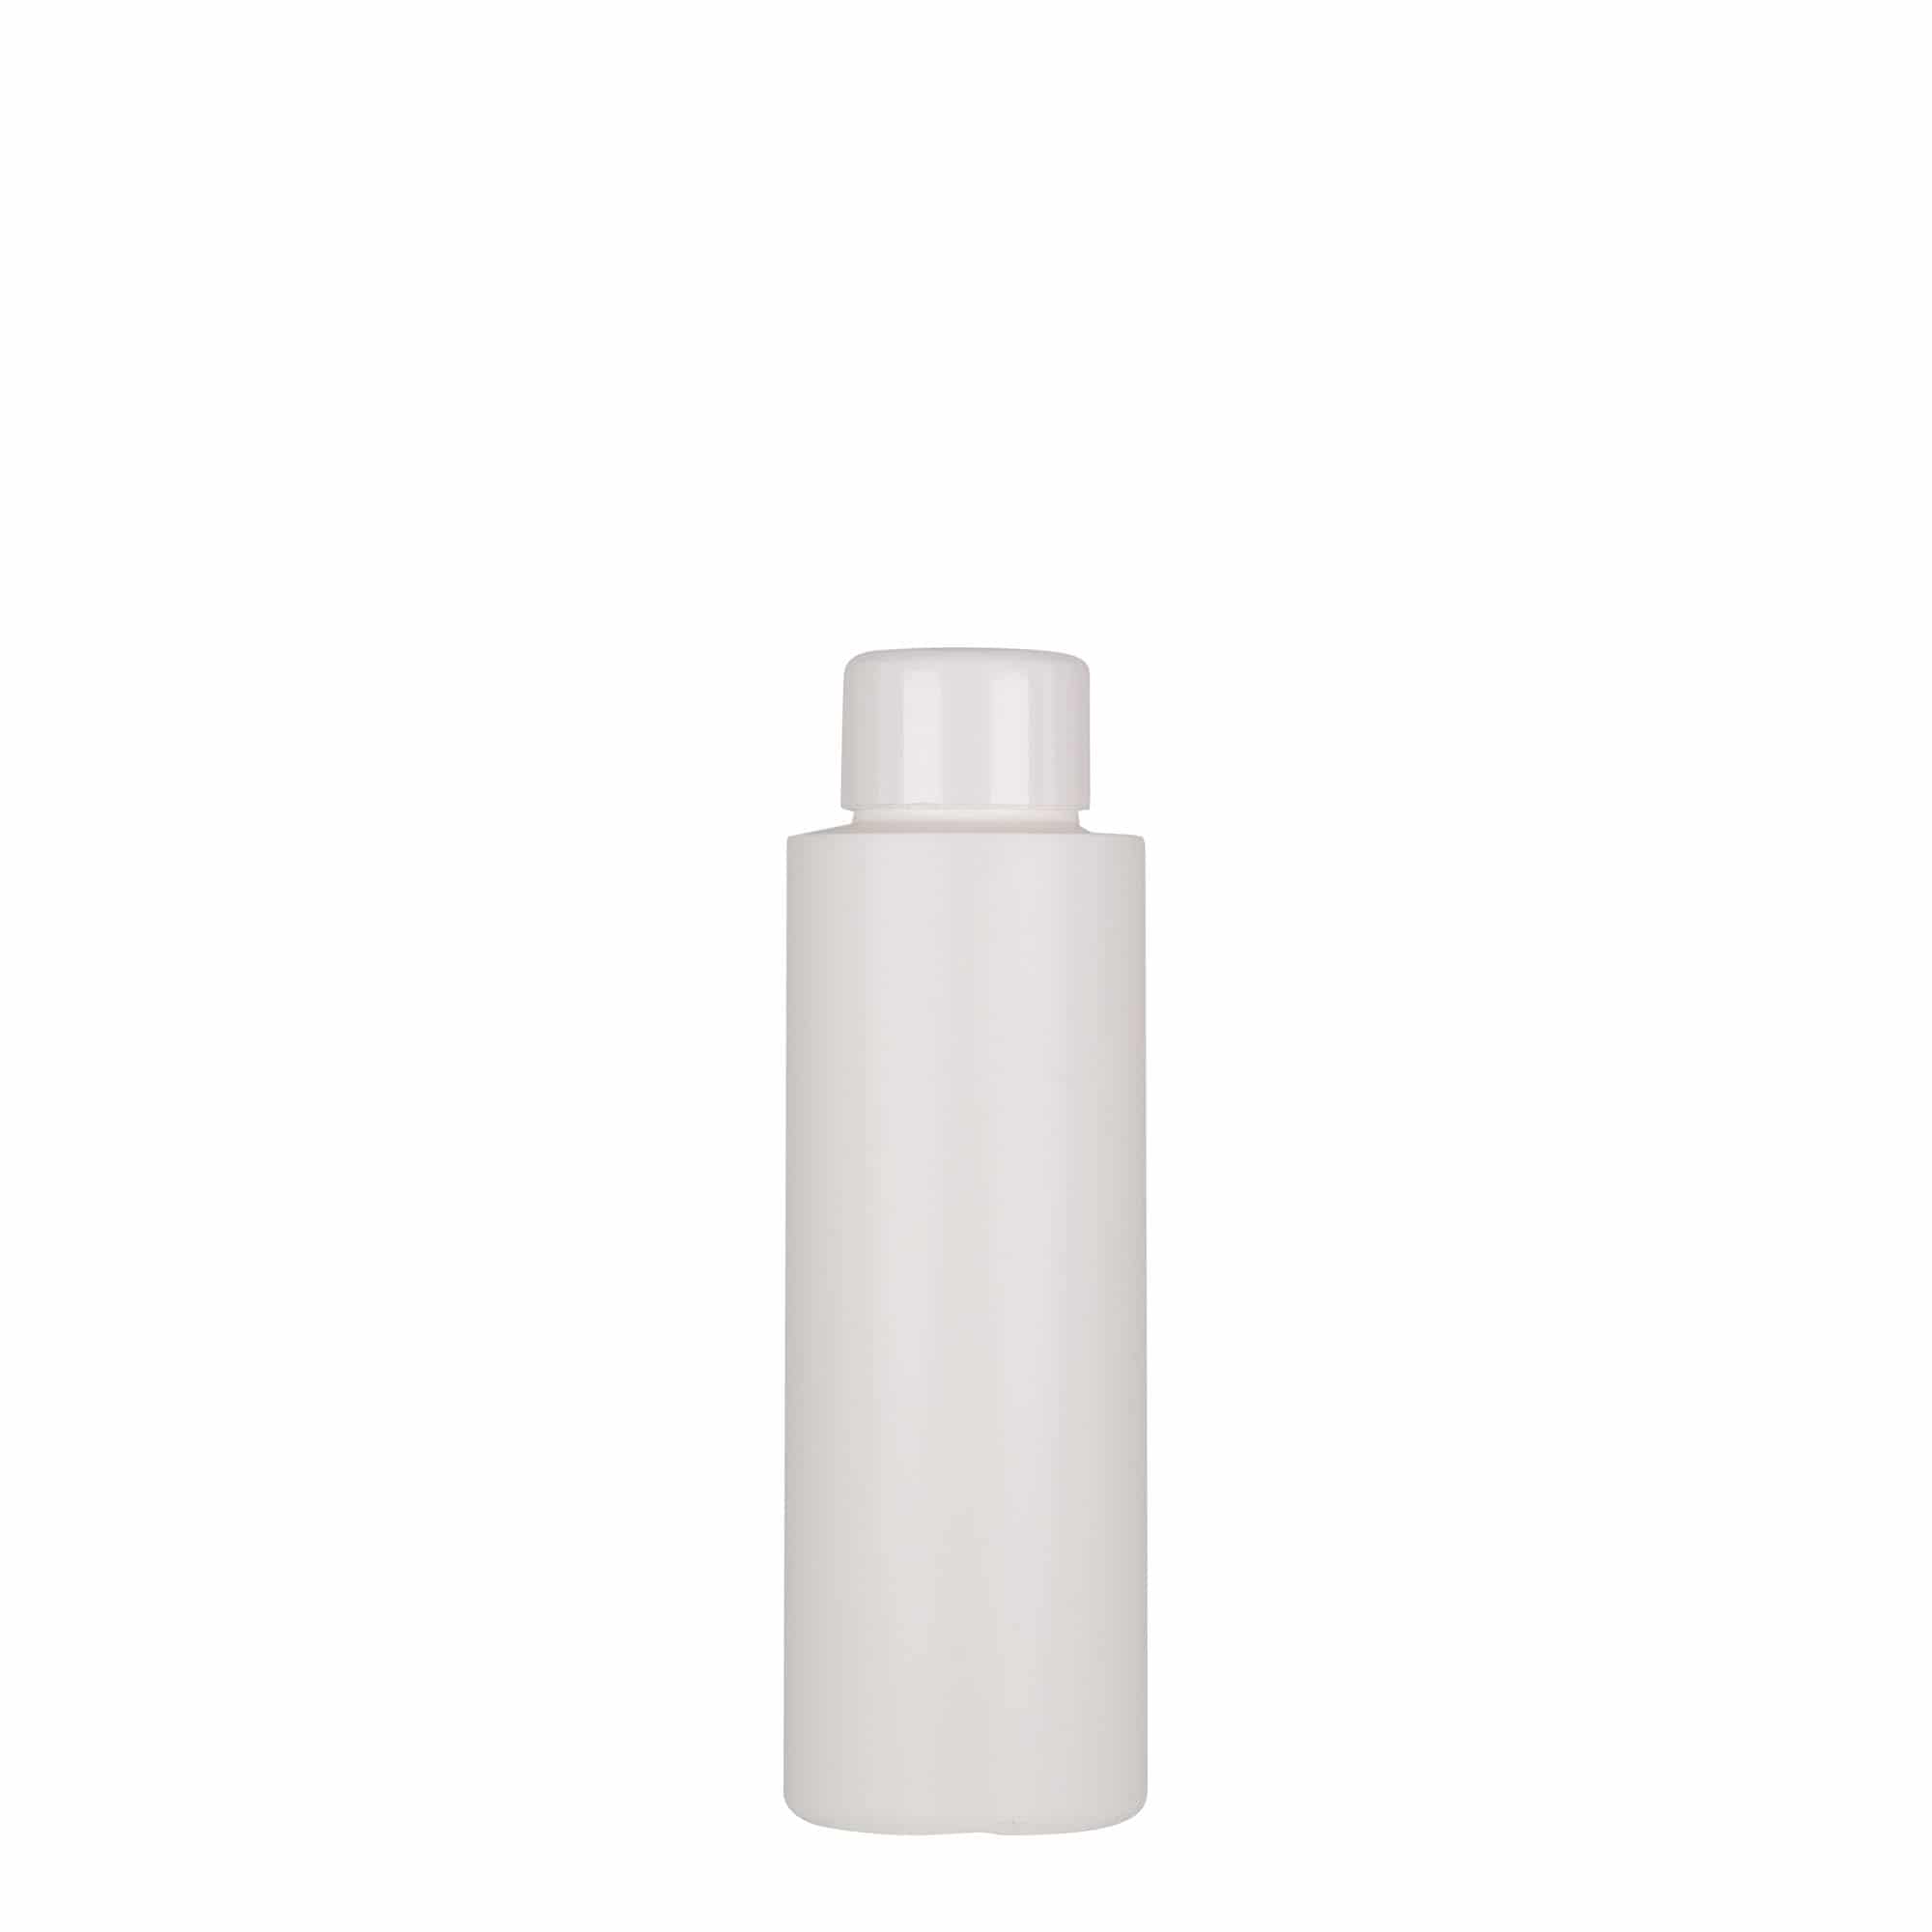 100 ml-es műanyag palack 'Pipe', Green HDPE, fehér, szájnyílás: GPI 24/410